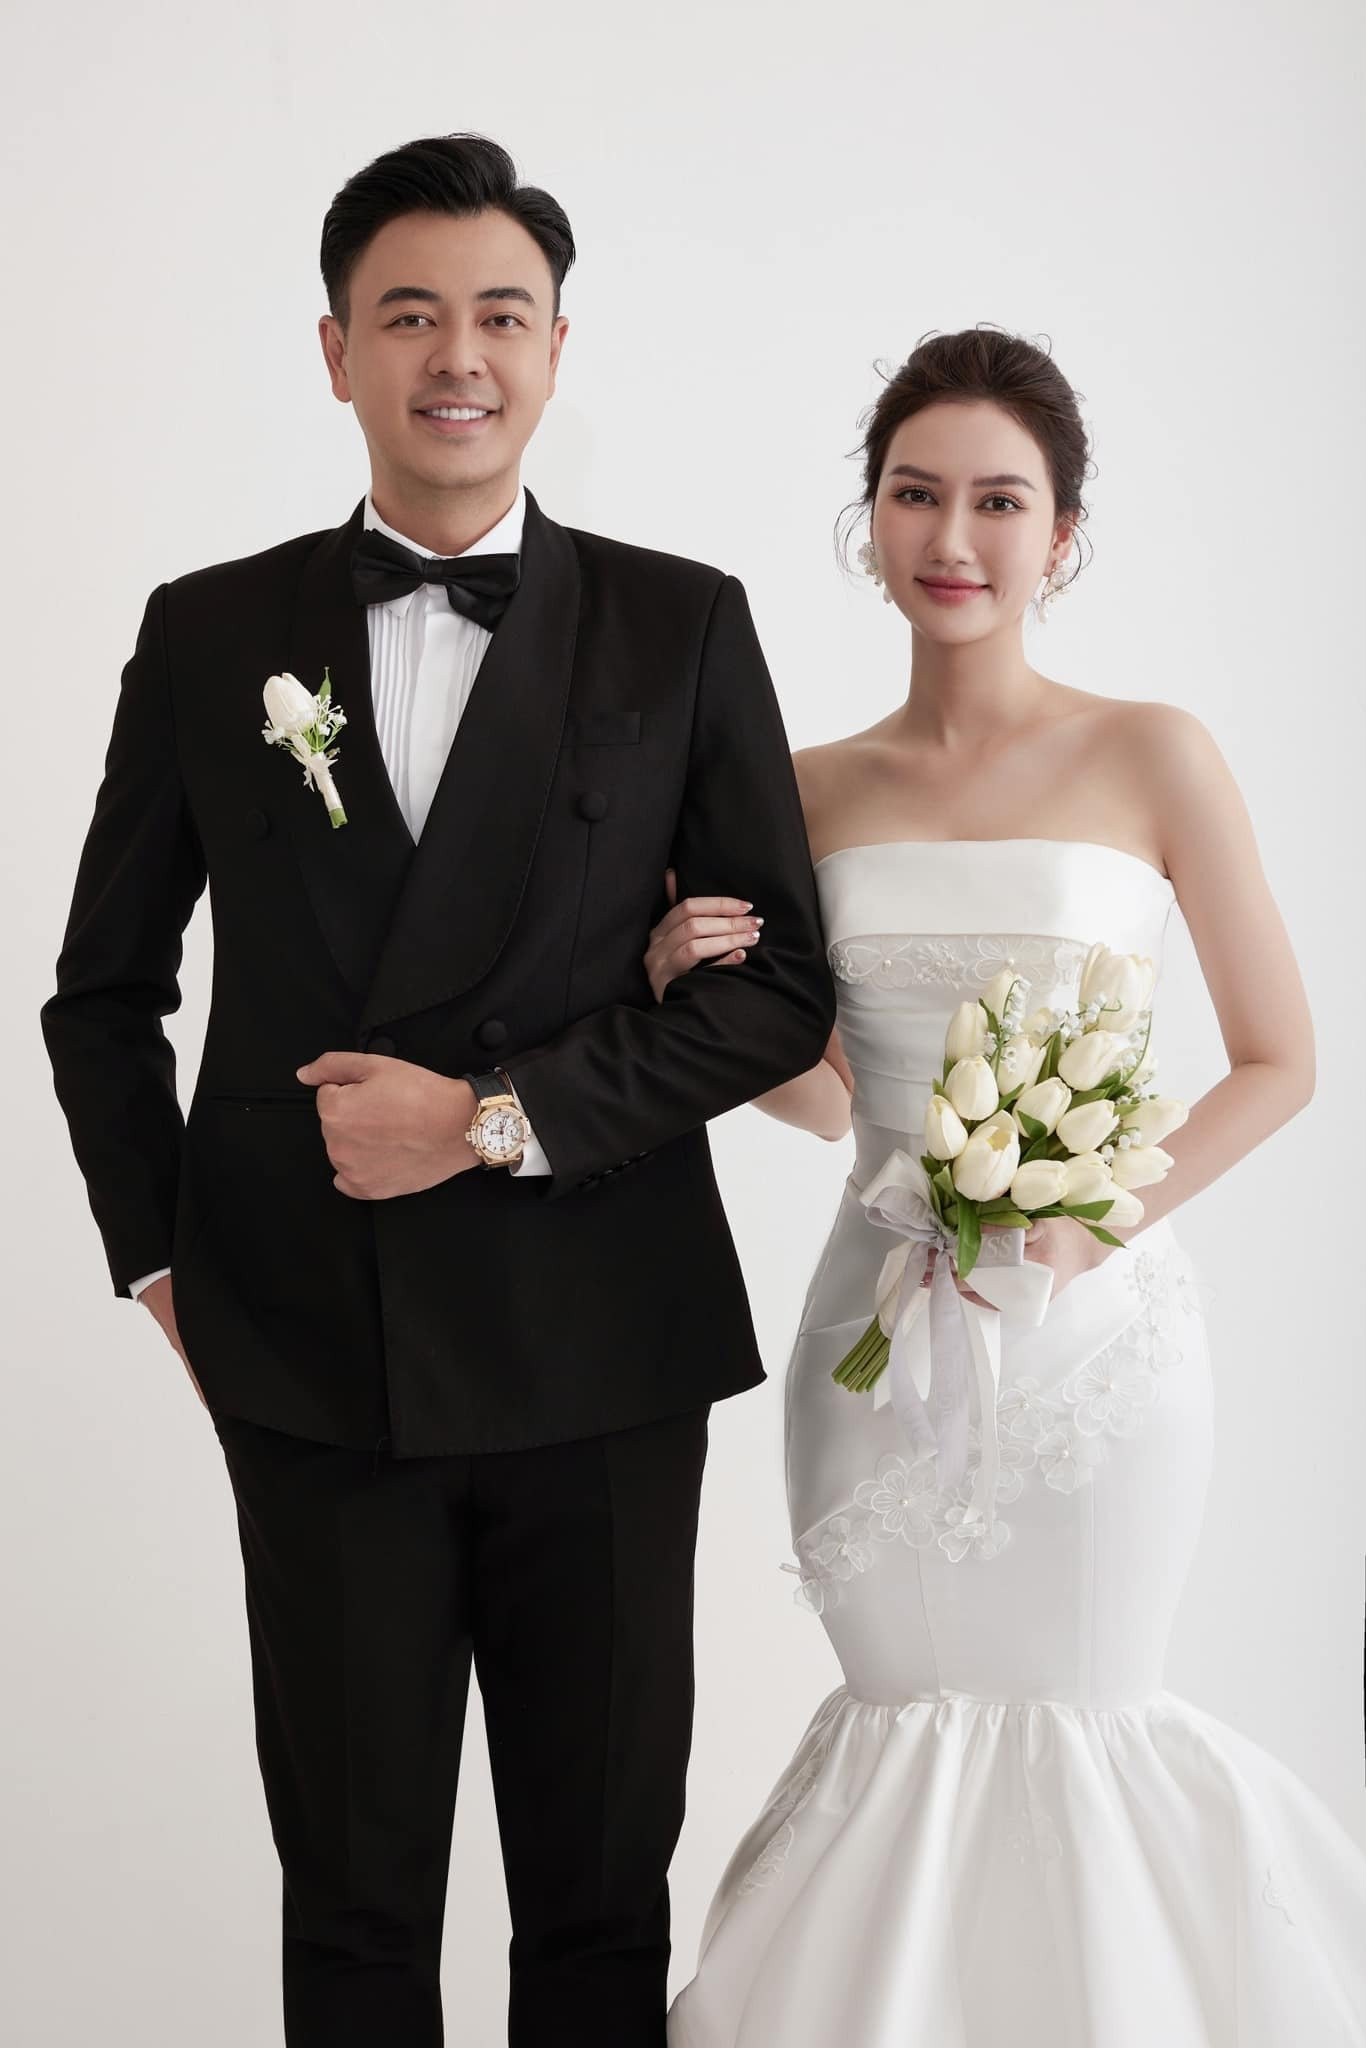 Diễn viên Hương Giang tung ảnh cưới bên Tuấn Tú: ''Chúc mọi người cuối tuần vui vẻ. Em lấy chồng đây''. Hình ảnh này khiến cư dân mạng cho rằng cả hai sẽ chuẩn bị đóng chung phim với nhau.